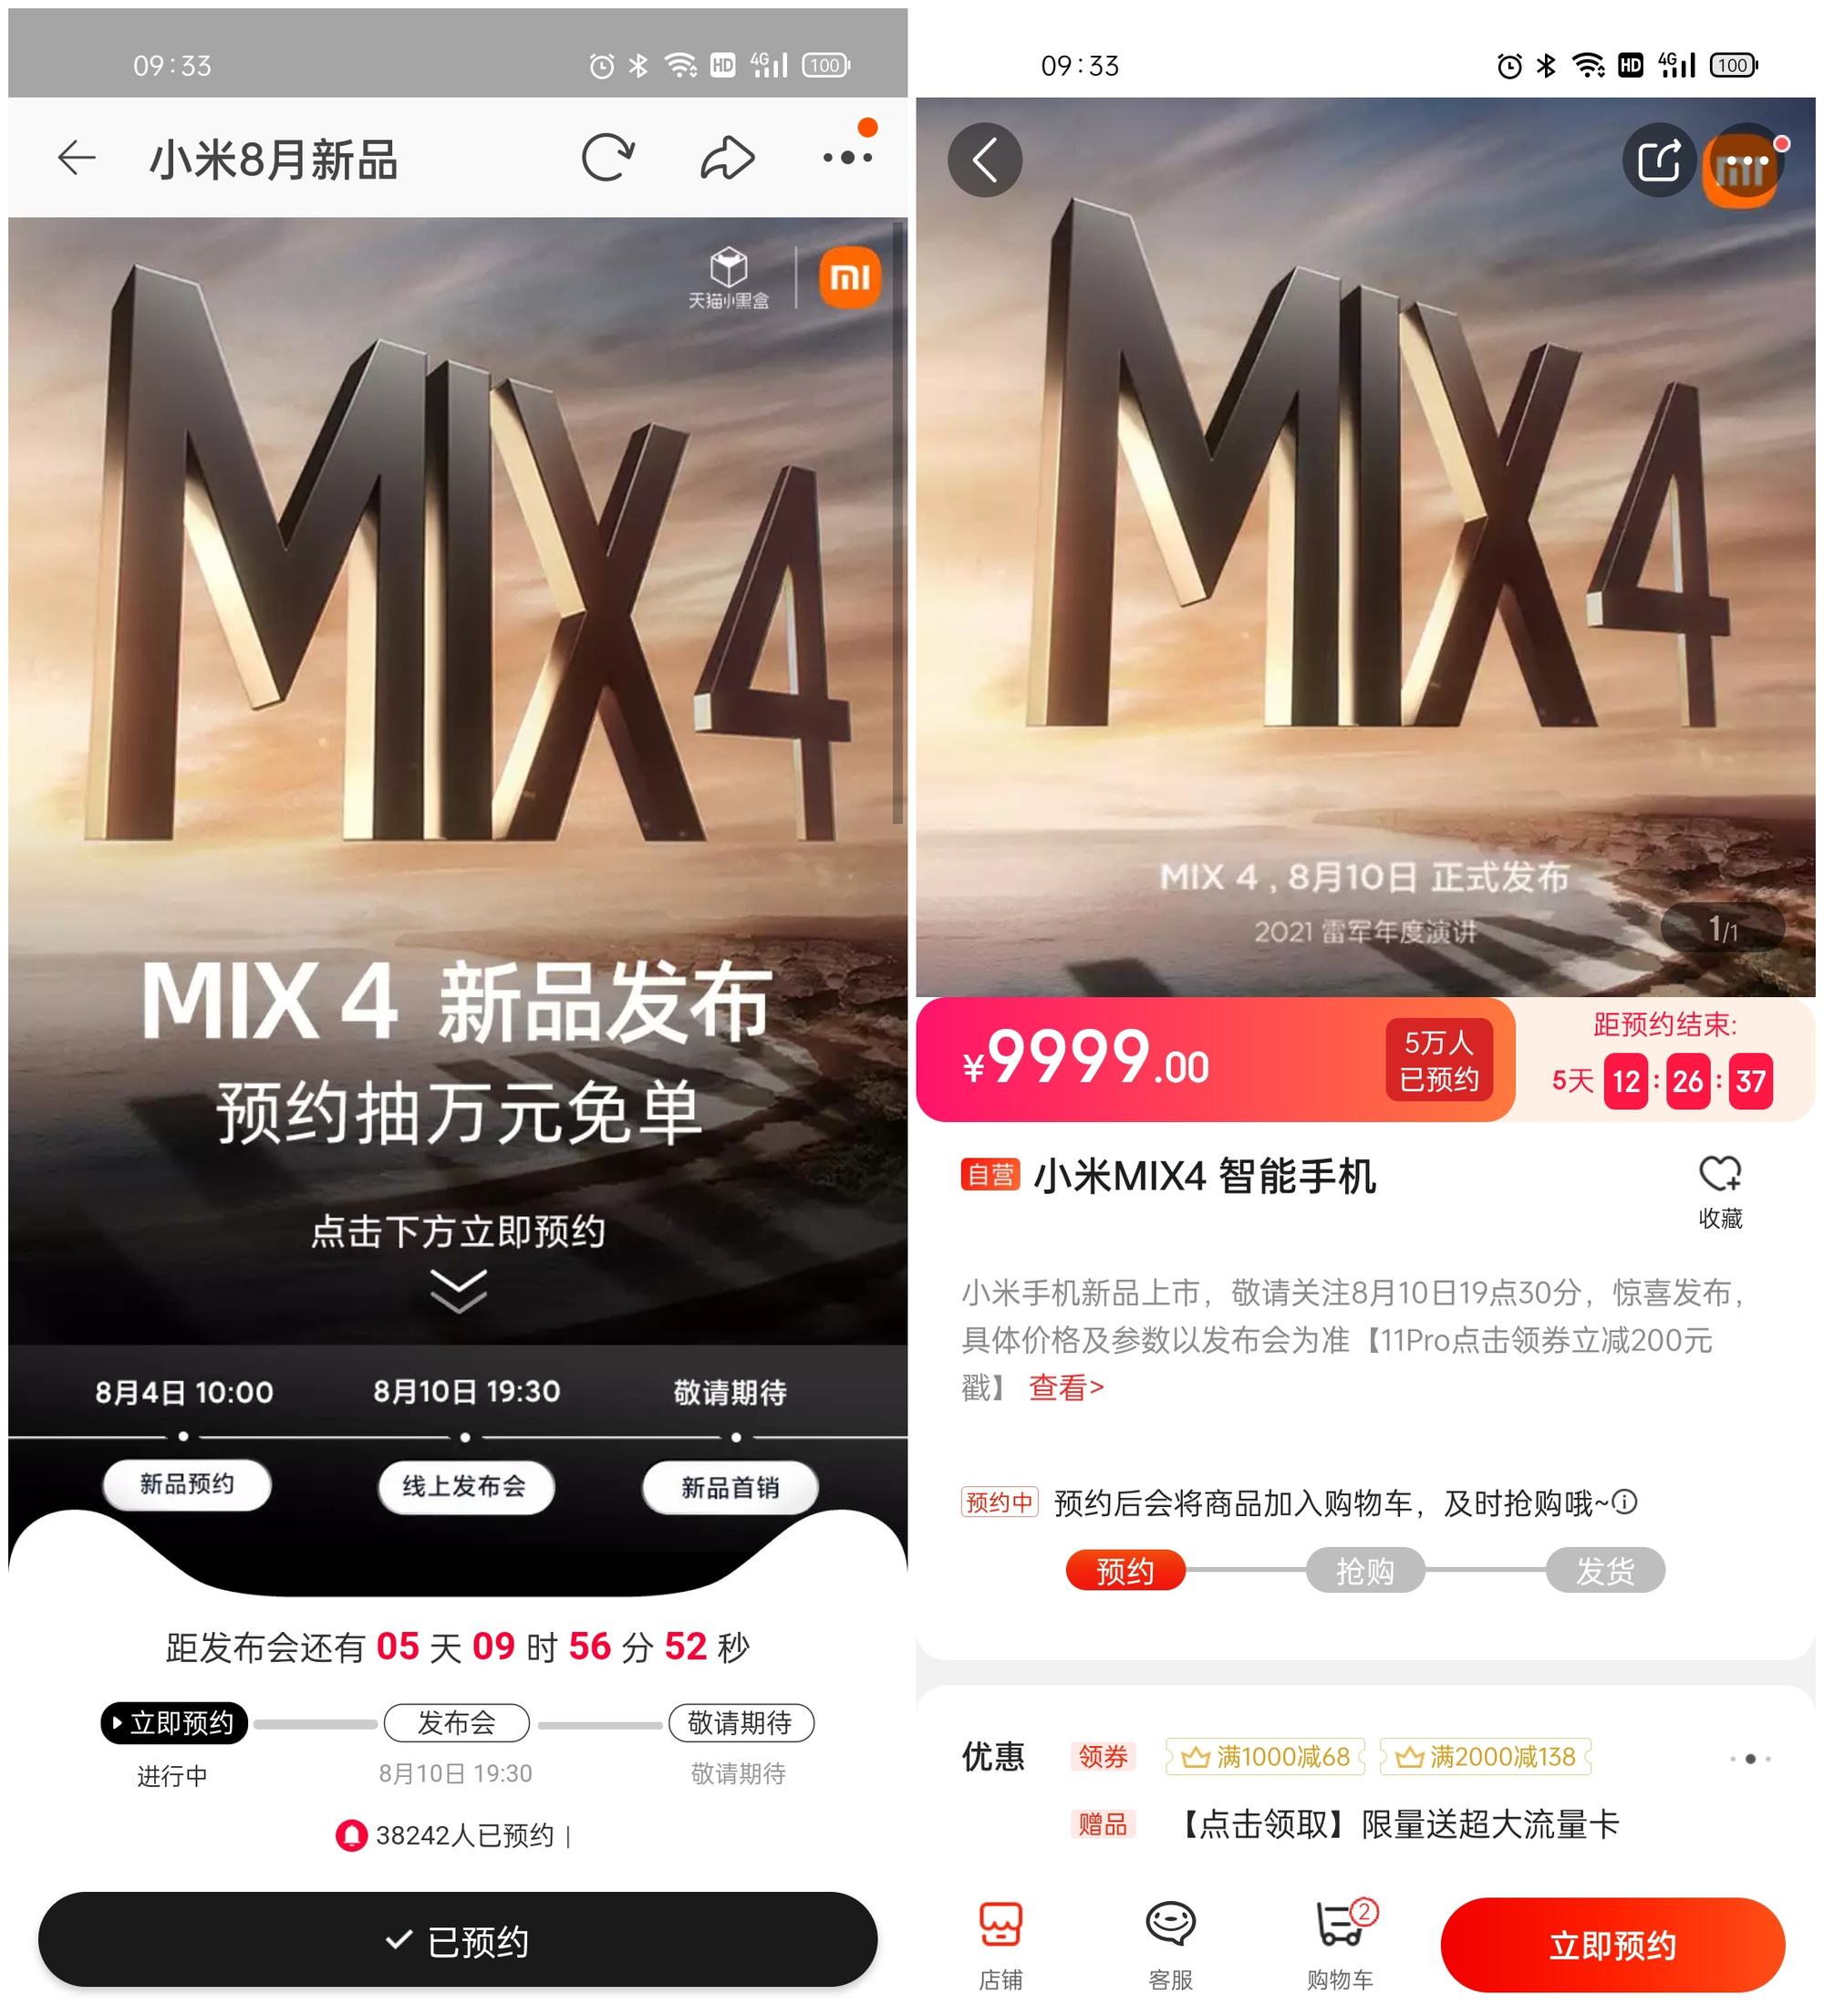 Chưa ra mắt, Xiaomi Mi MIX 4 đã nhận về hơn 100,000 đơn đặt hàng trước - Ảnh 2.